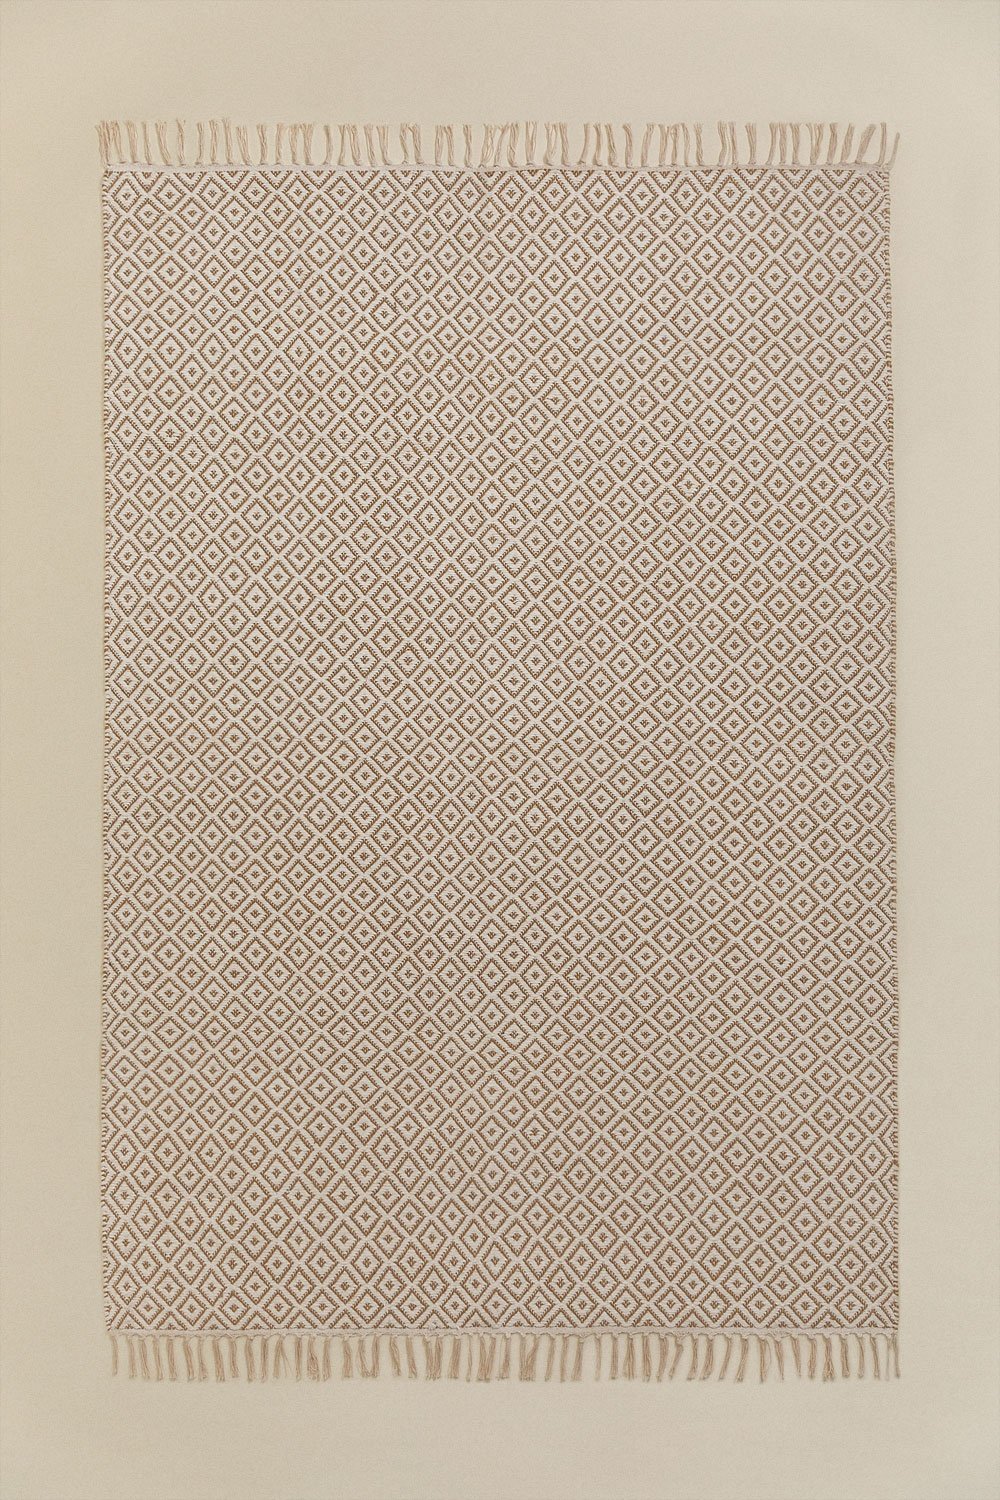 Tapis en Coton et Jute (175x122 cm) Durat, image de la galerie 1